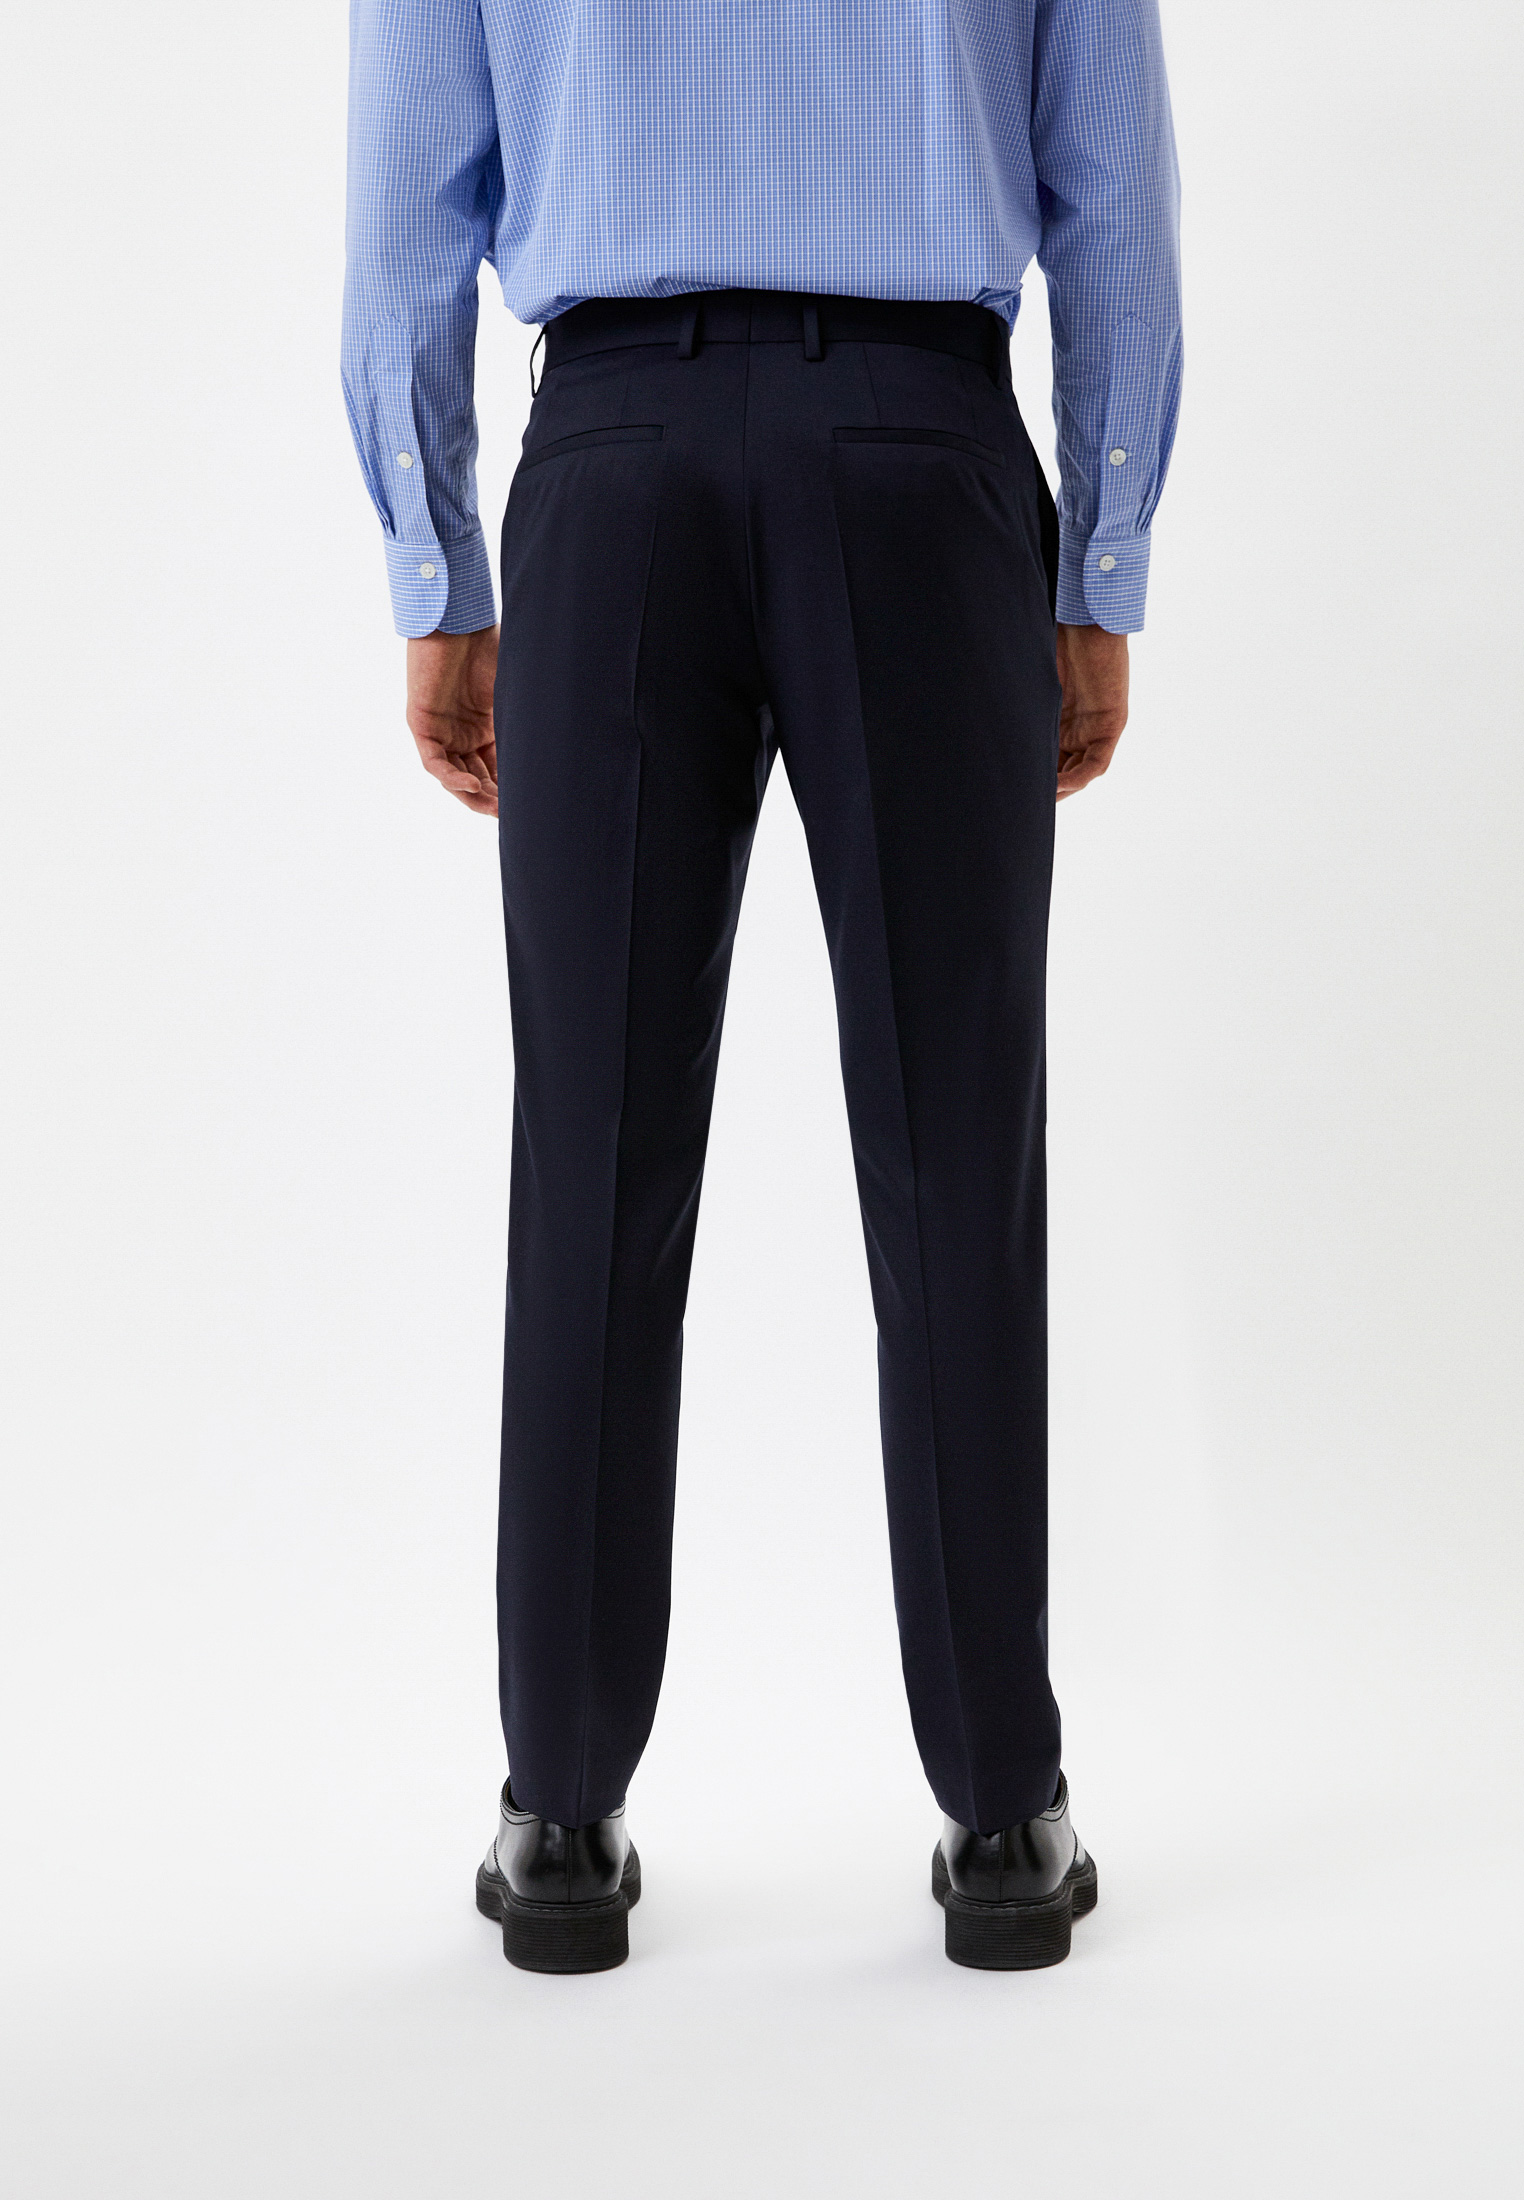 Мужские классические брюки Boss (Босс) 50469174: изображение 3